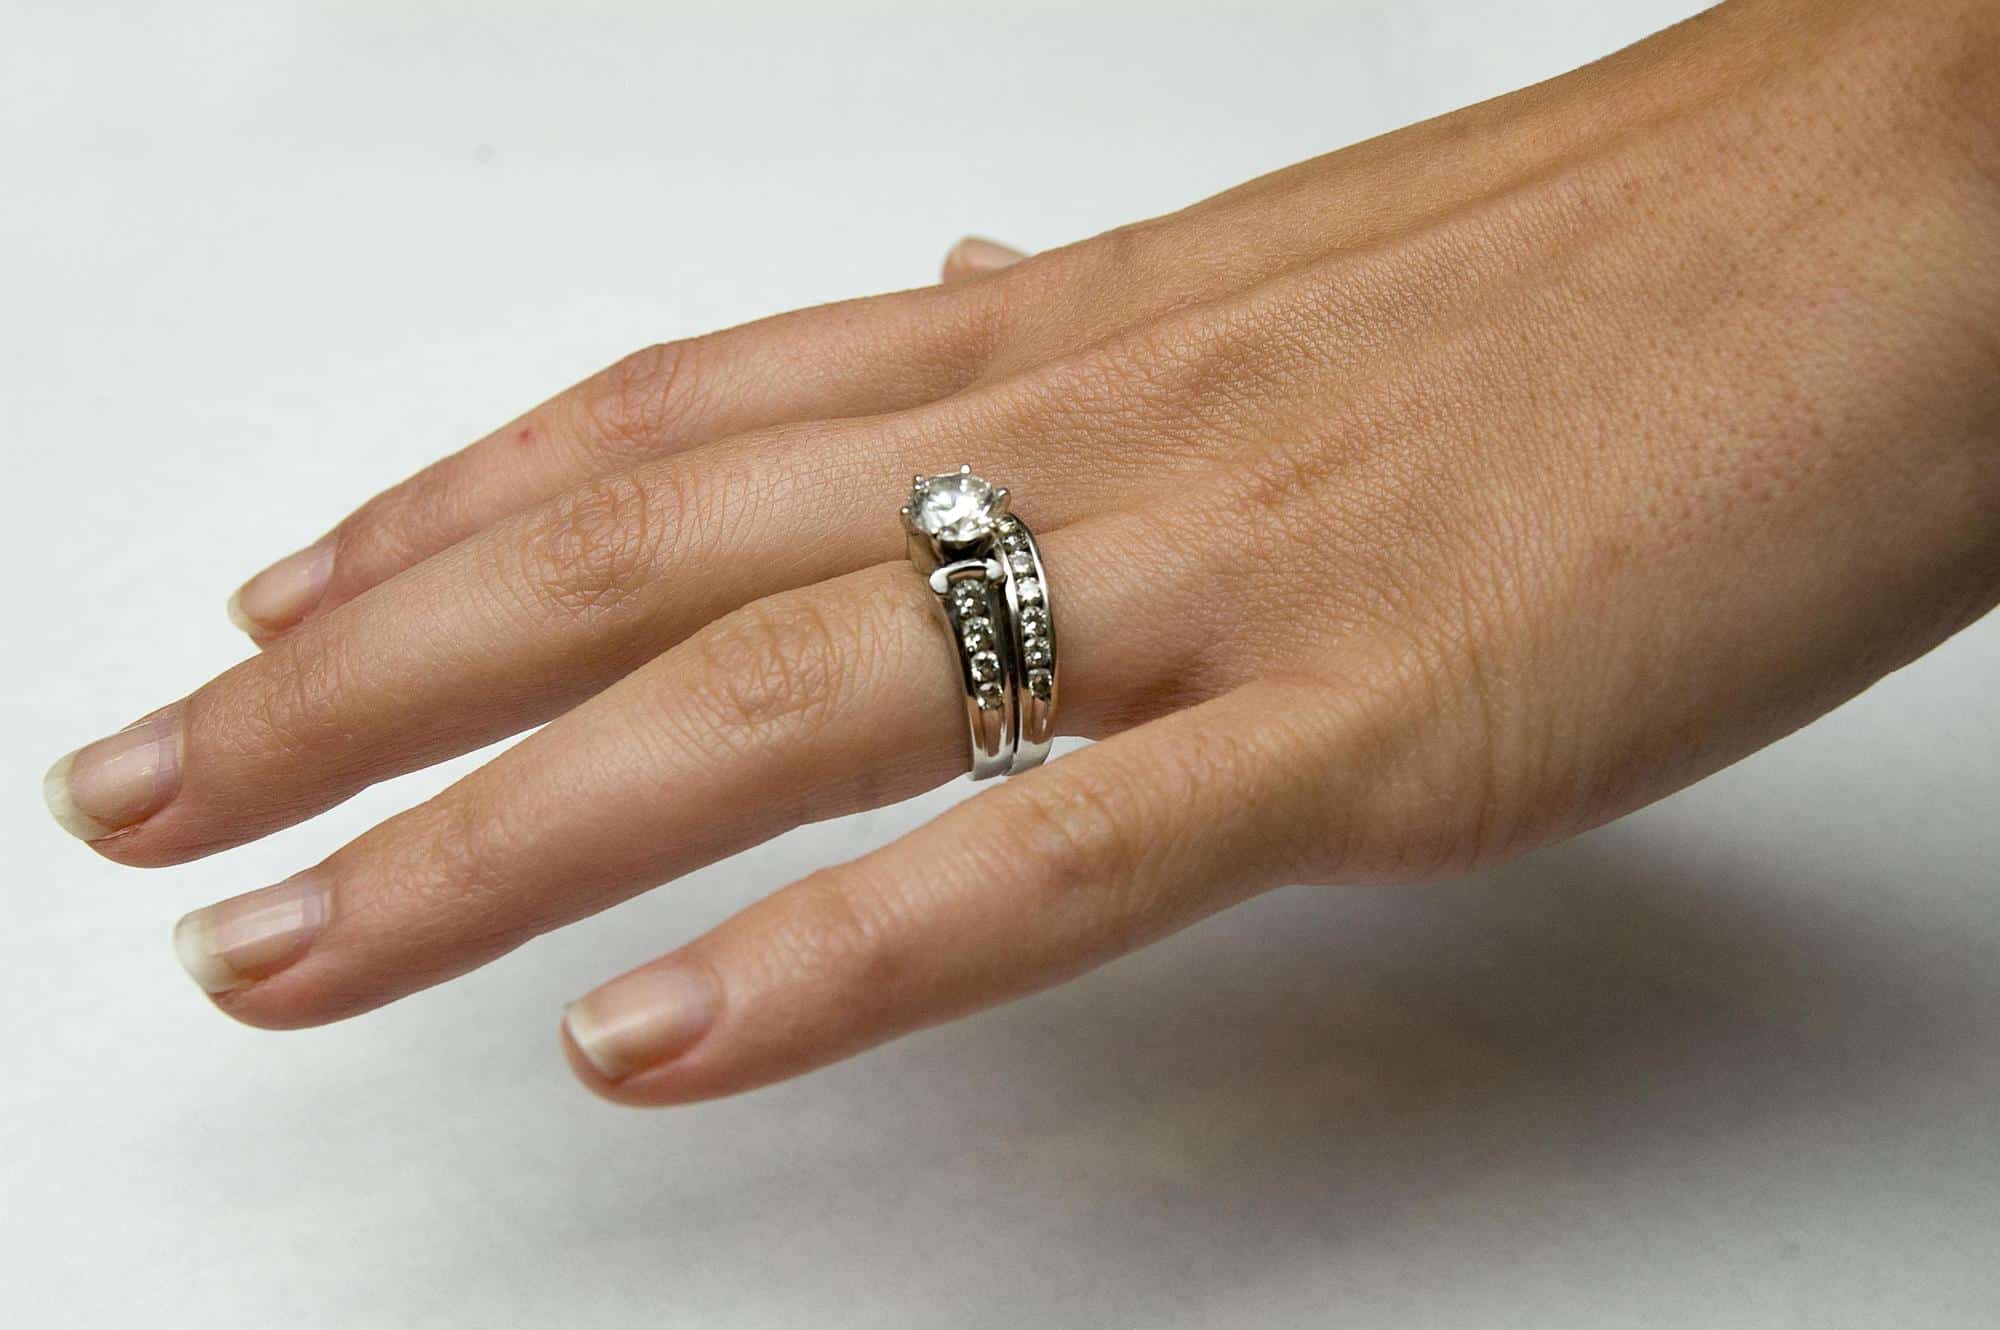 एक विवाहित महिला के लिए सोने की अंगूठी पहनने के सपने की व्याख्या